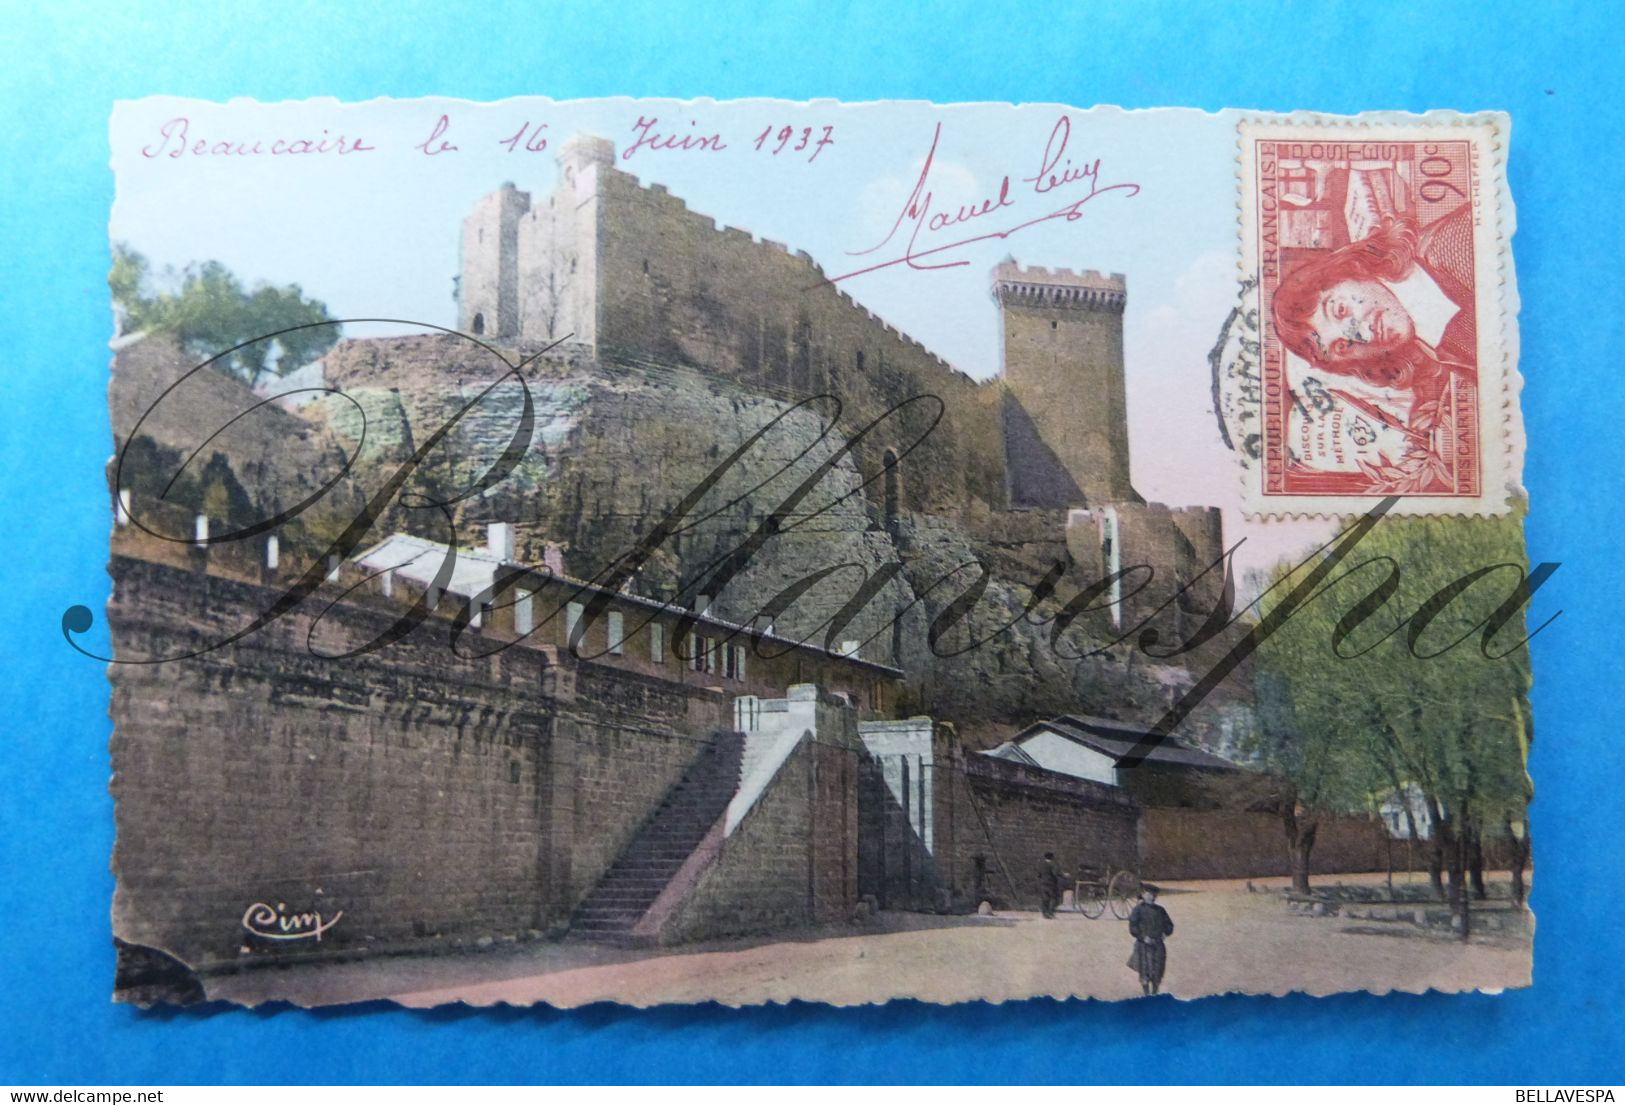 Beaucaire La Banquette Le Chateau. 1937-D30-timbre N° 341 - Beaucaire